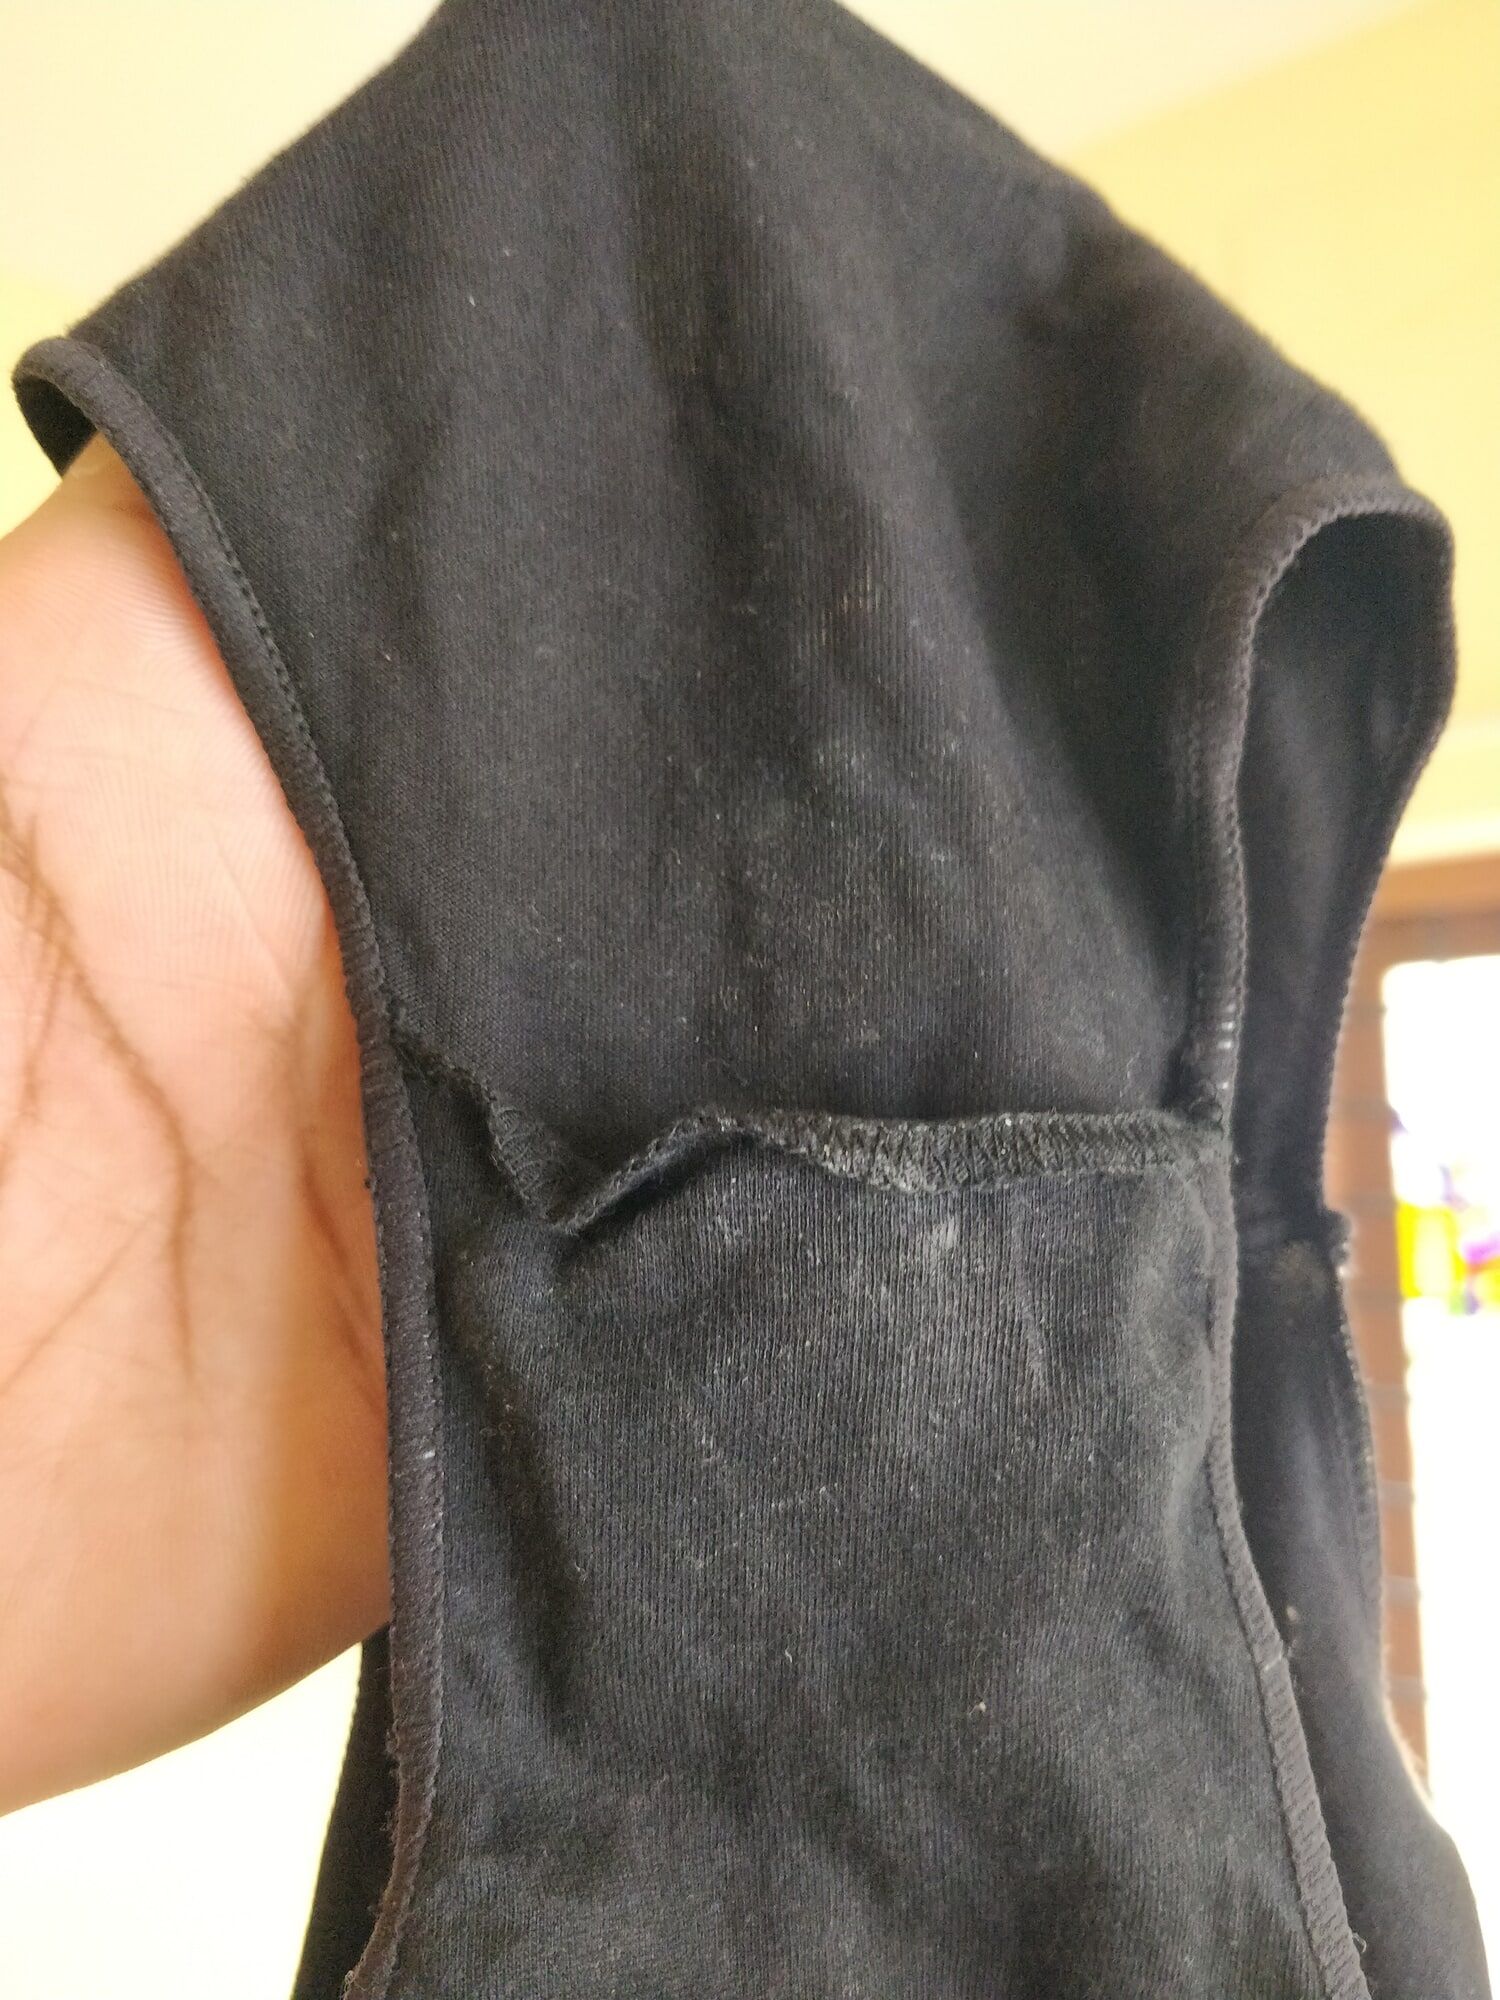 Caught My Bhabhi's wet underwear